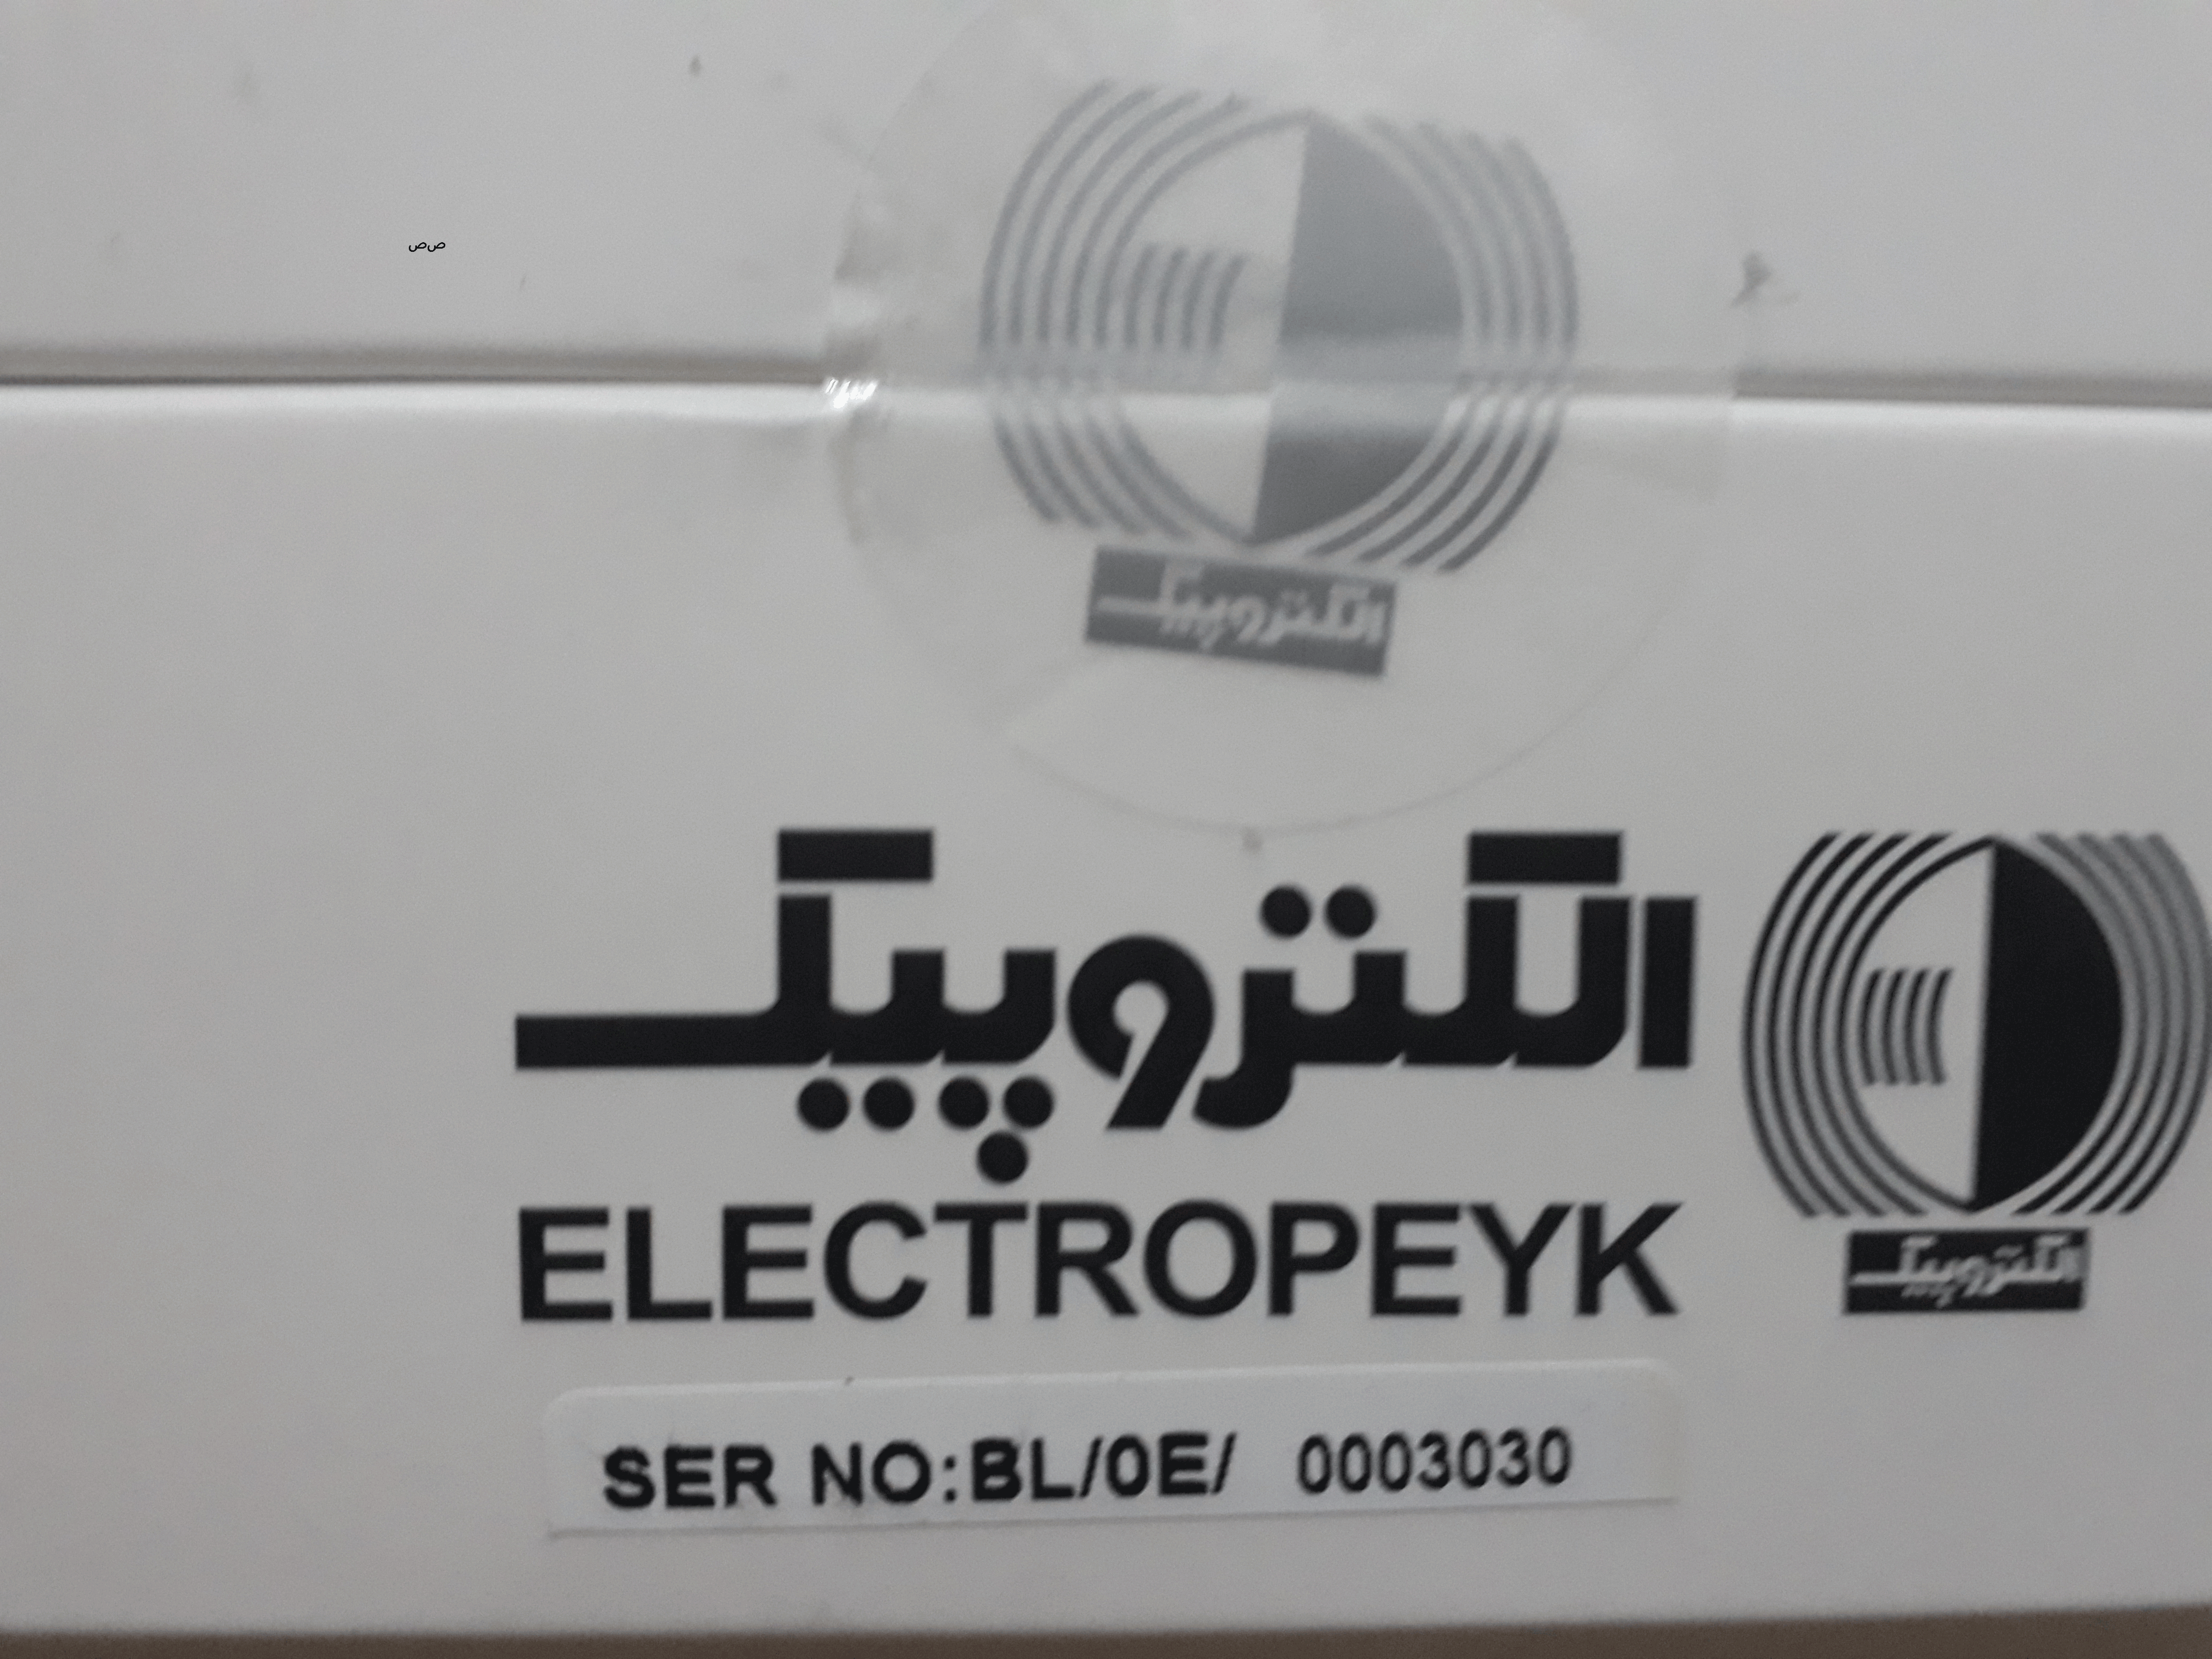 برای اطمینان از اصالت کالا به لگوی شرکت الکتروپیک که در کنار بسته بندی آن چسیانده شده دقت کنید